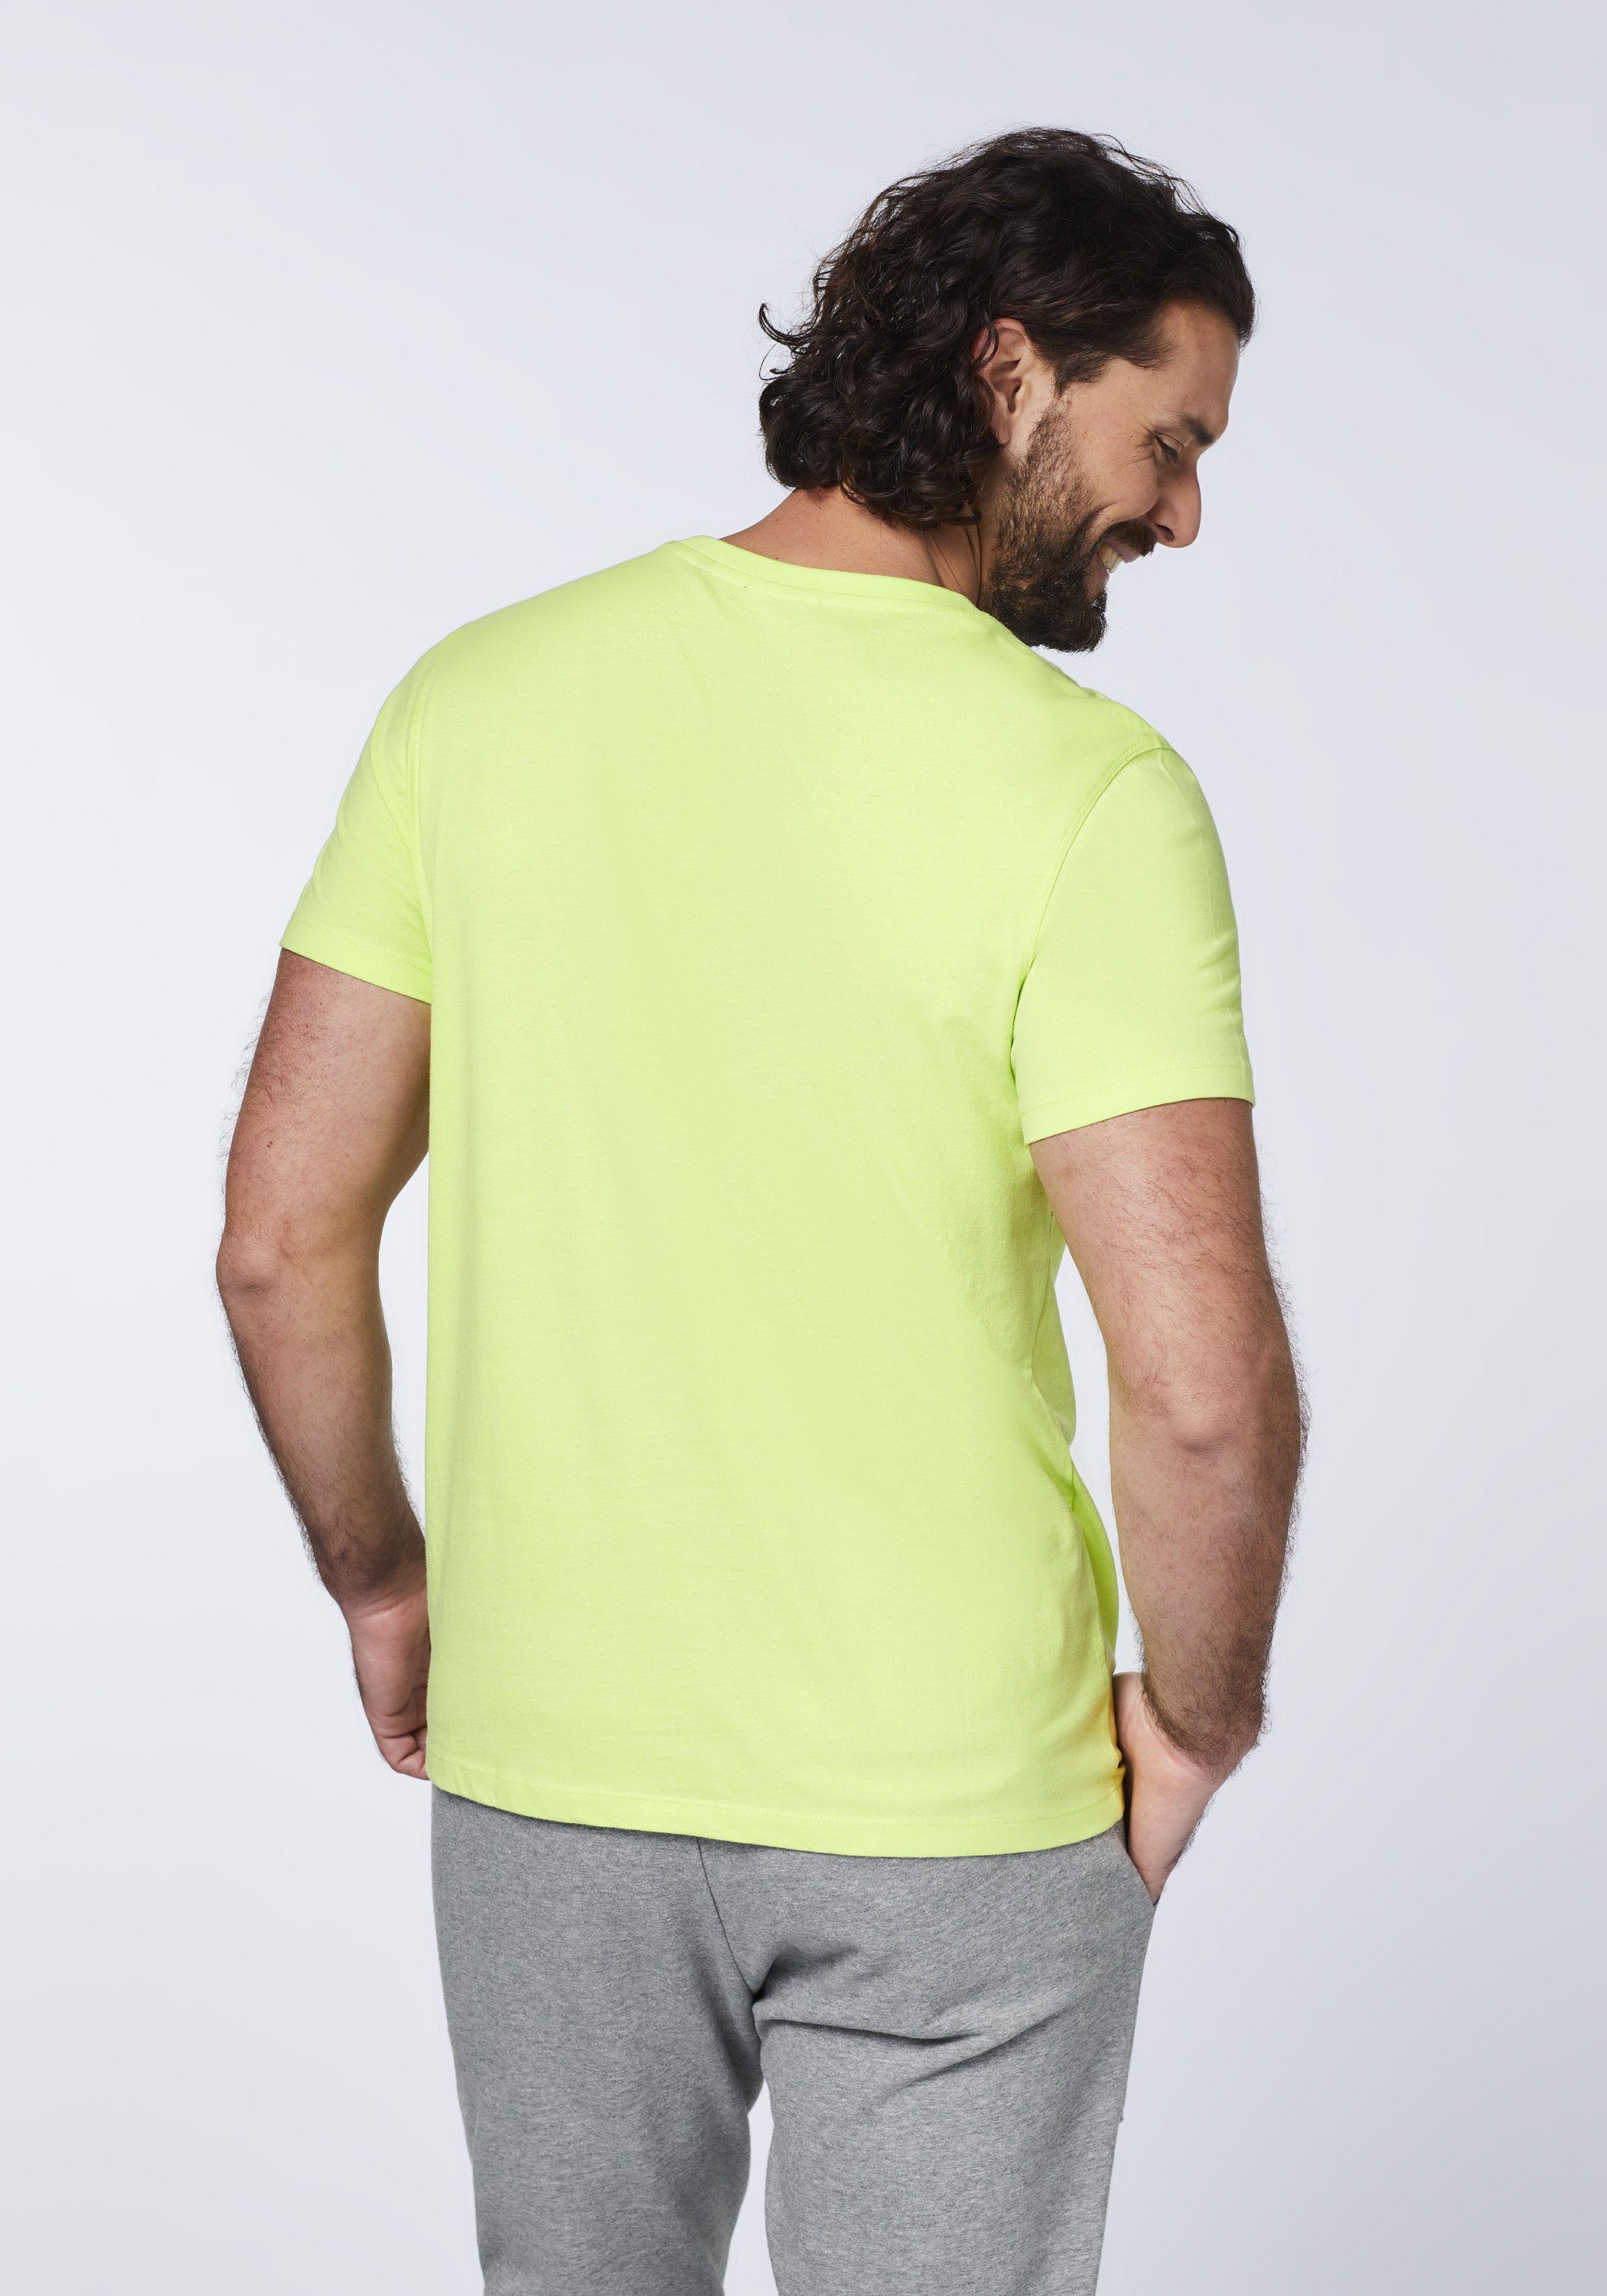 Green Surf-Fotoprint Print-Shirt mit Baumwolle 1 Sharp 13-0535 aus T-Shirt Chiemsee